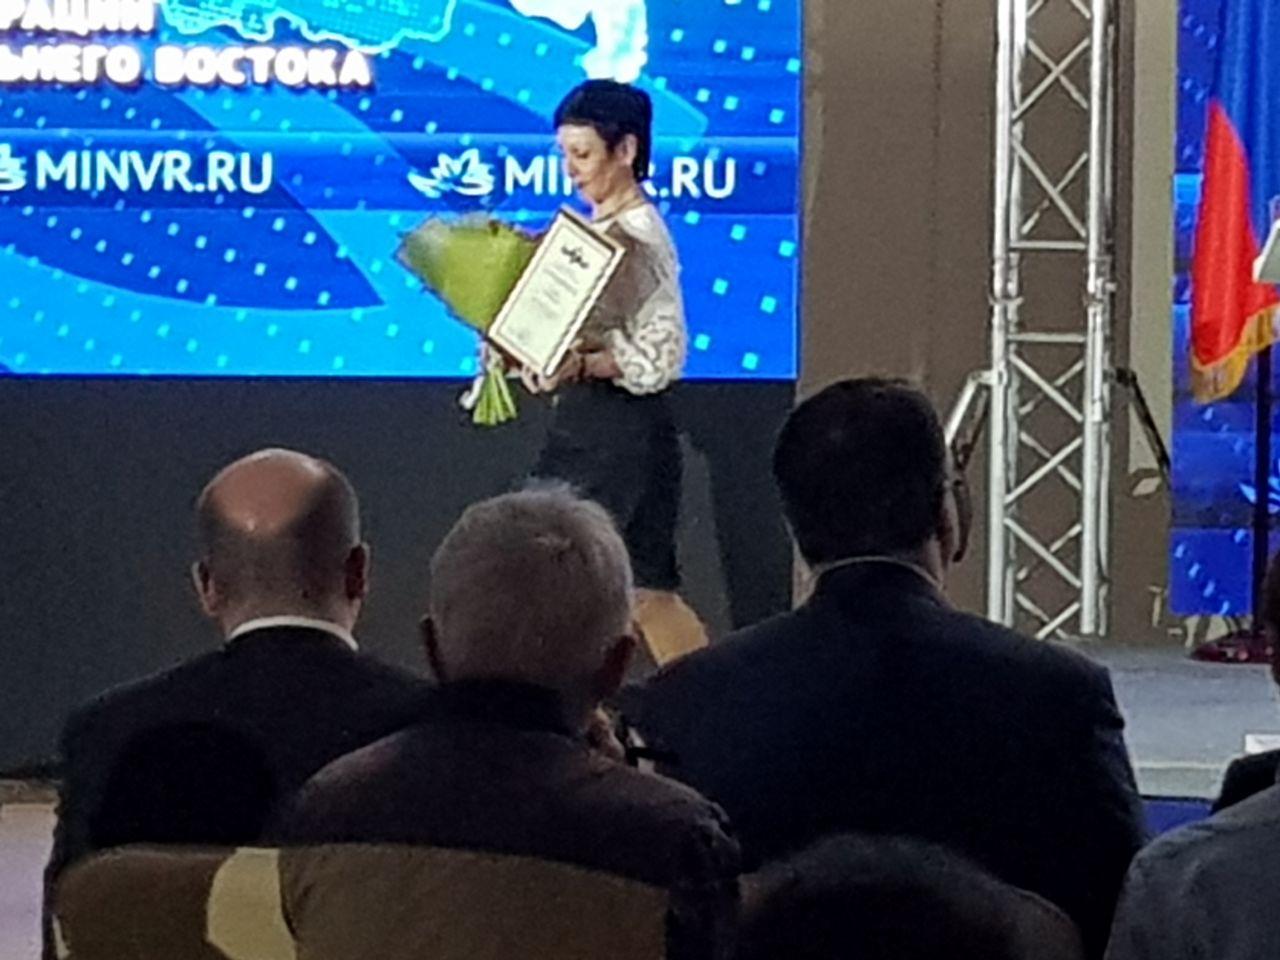 Алла Владимировна Сушок получила ведомственную награду Минвостокразвития